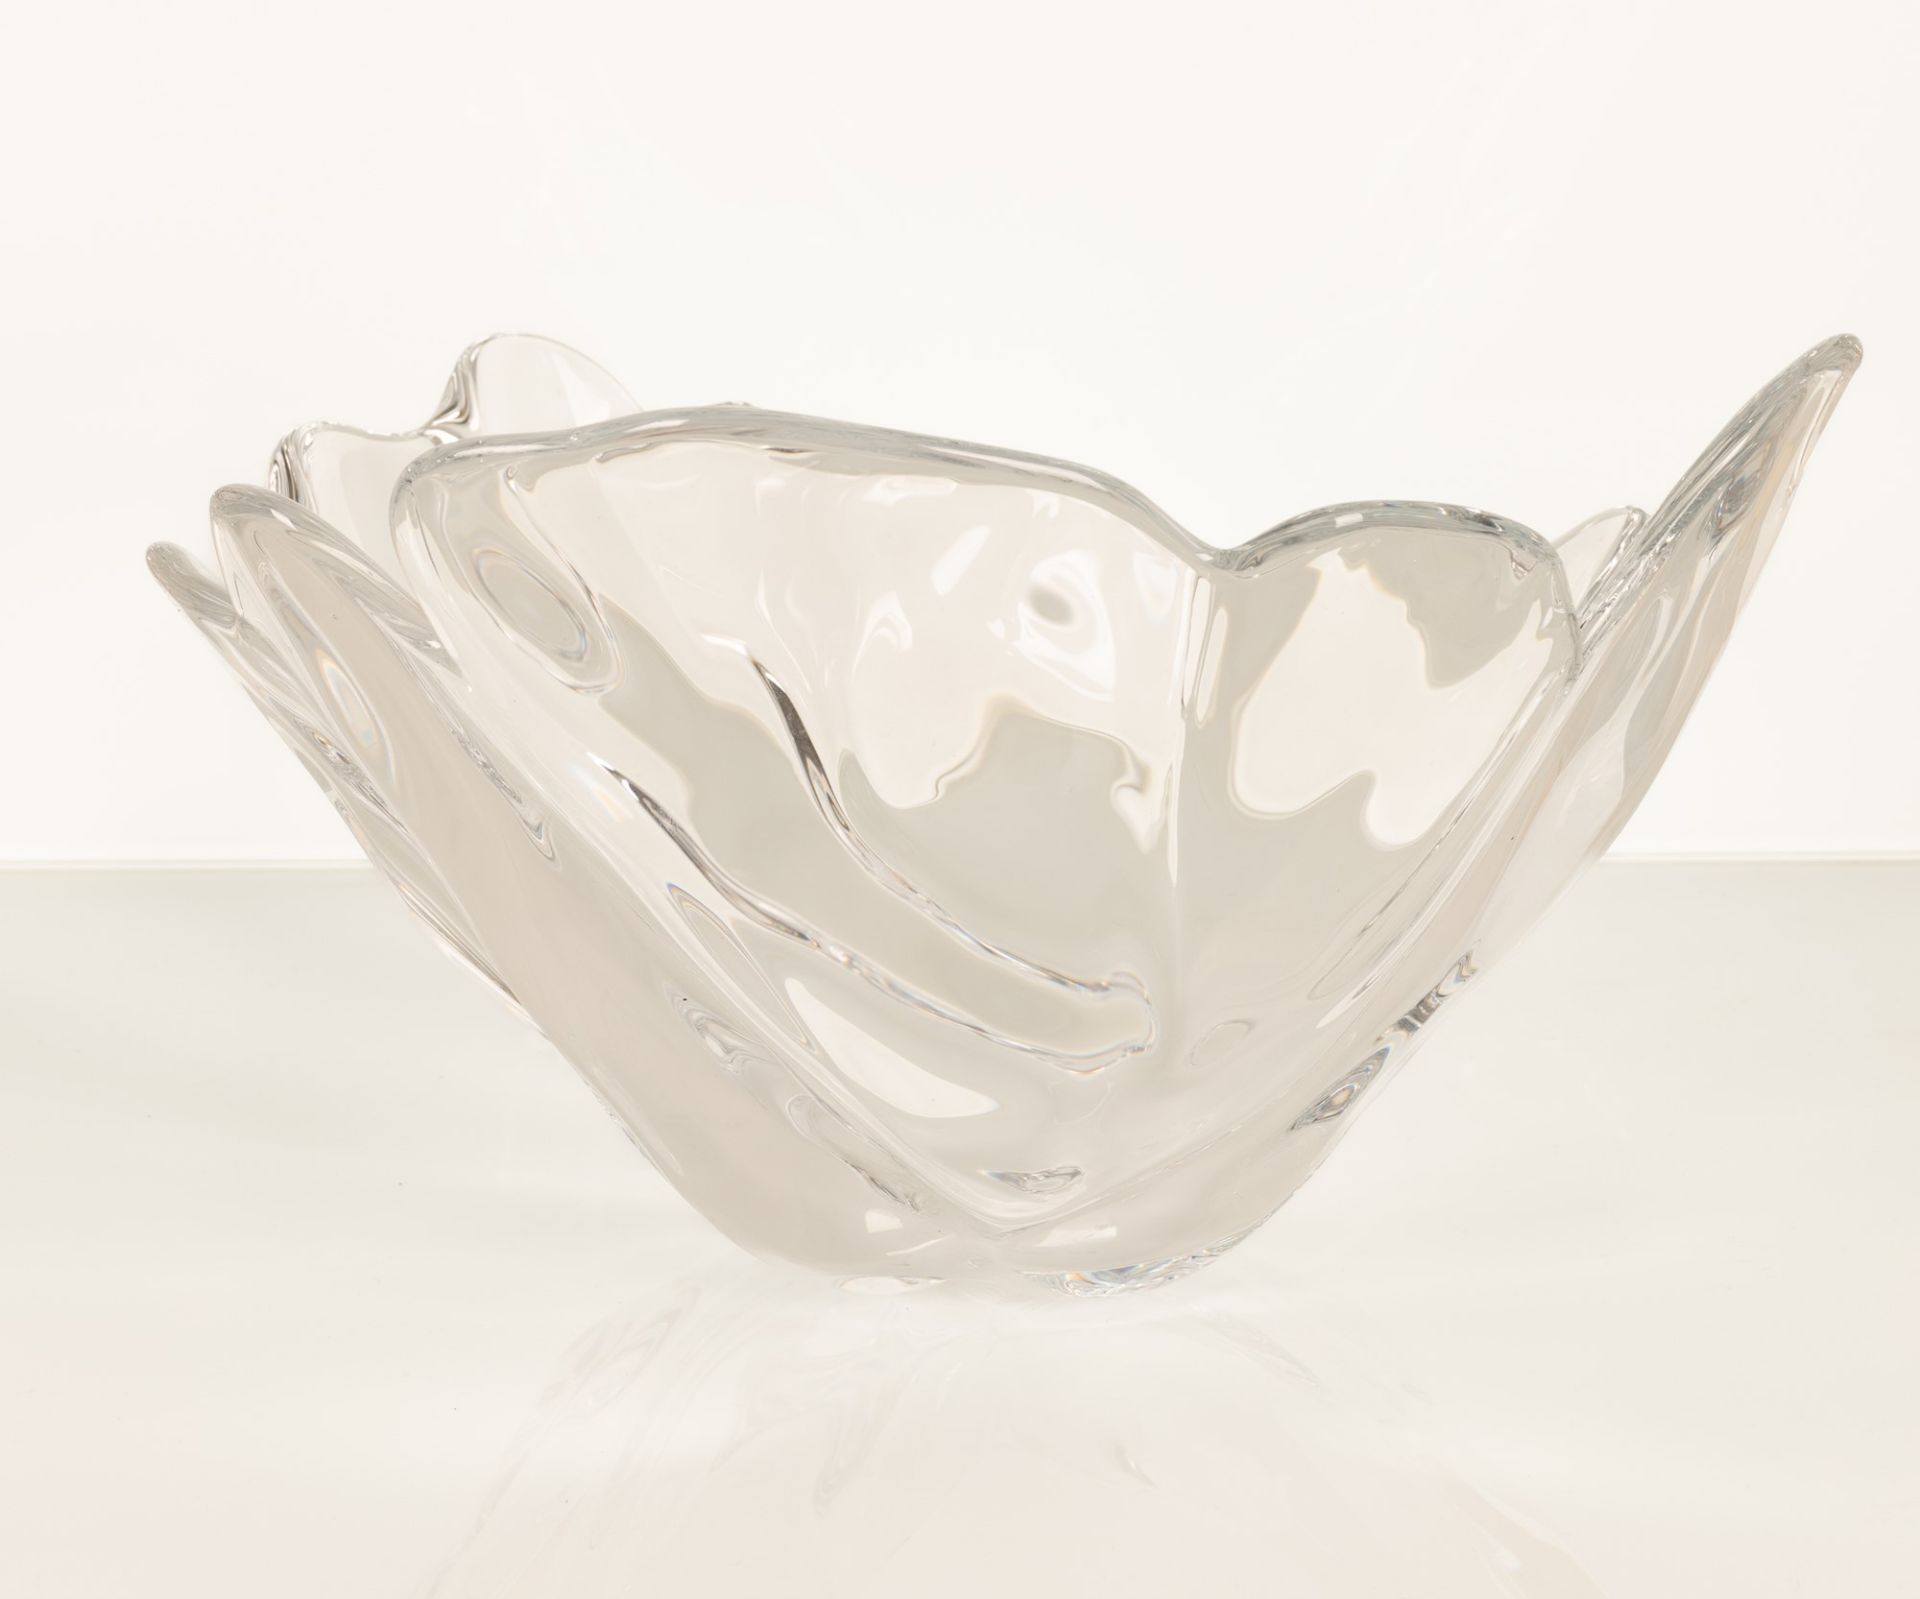 Centro tavola in vetro a forma di foglia con bordo mistilineo - Image 3 of 4